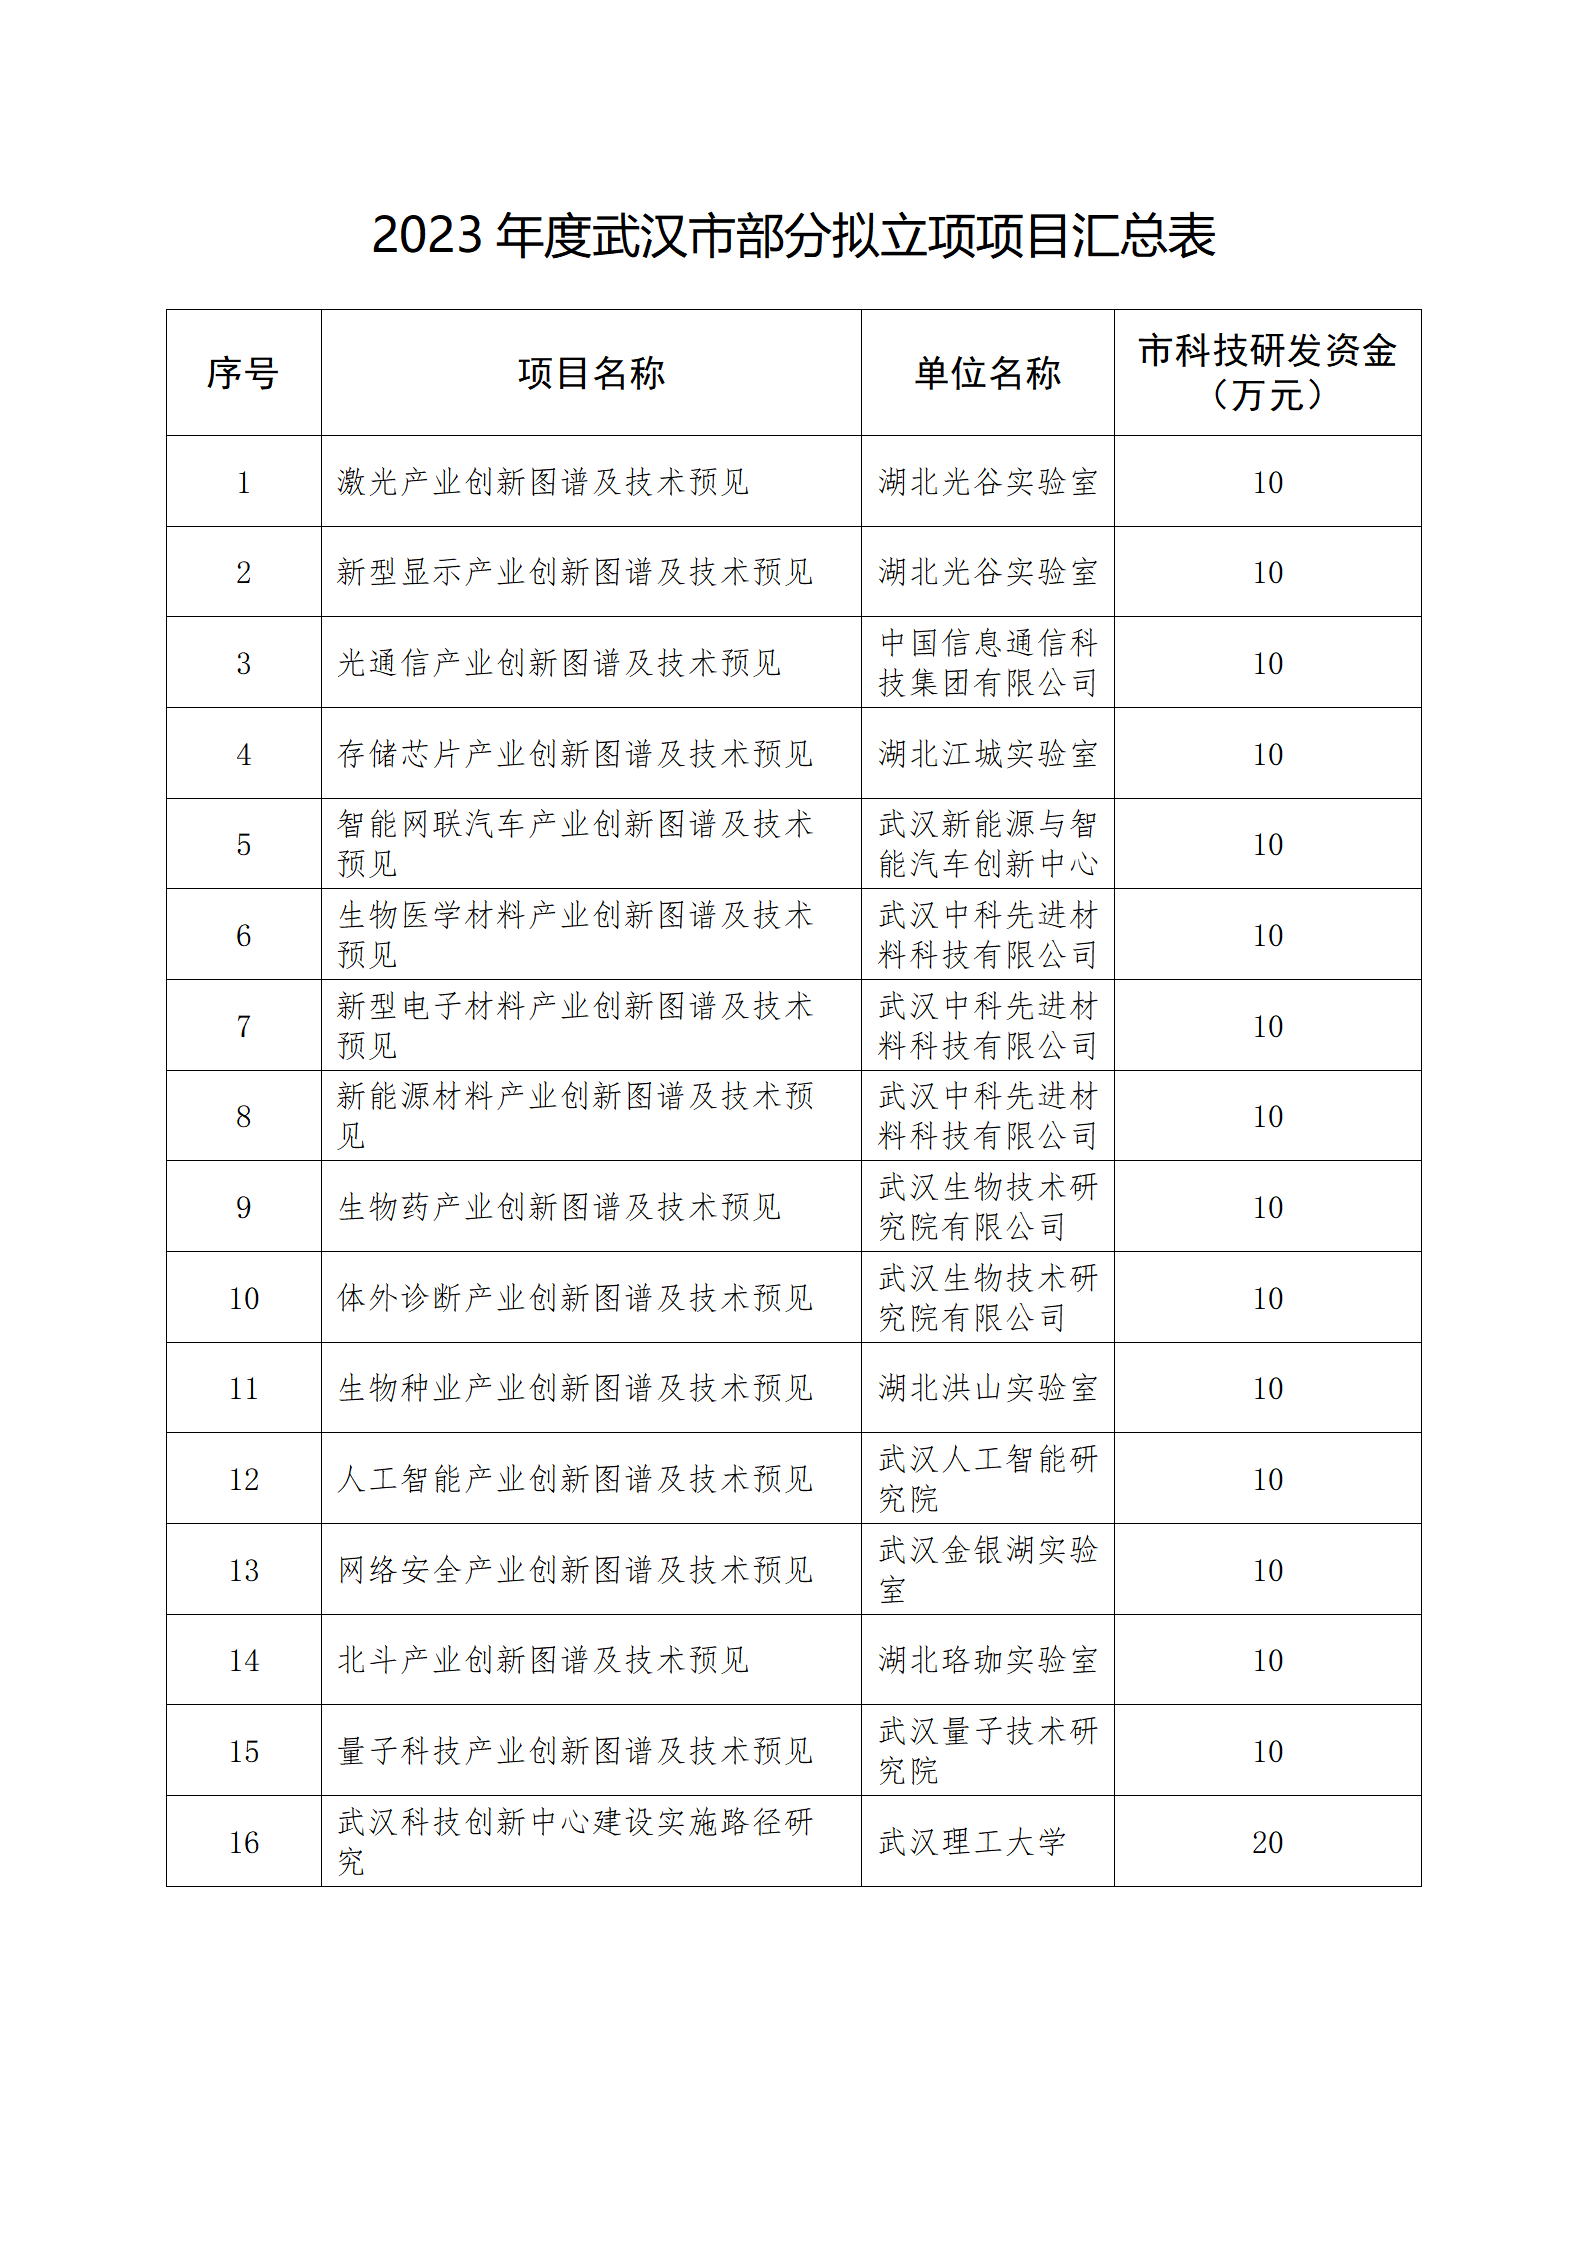 2023年度武汉市部分拟立项项目汇总表_01.png